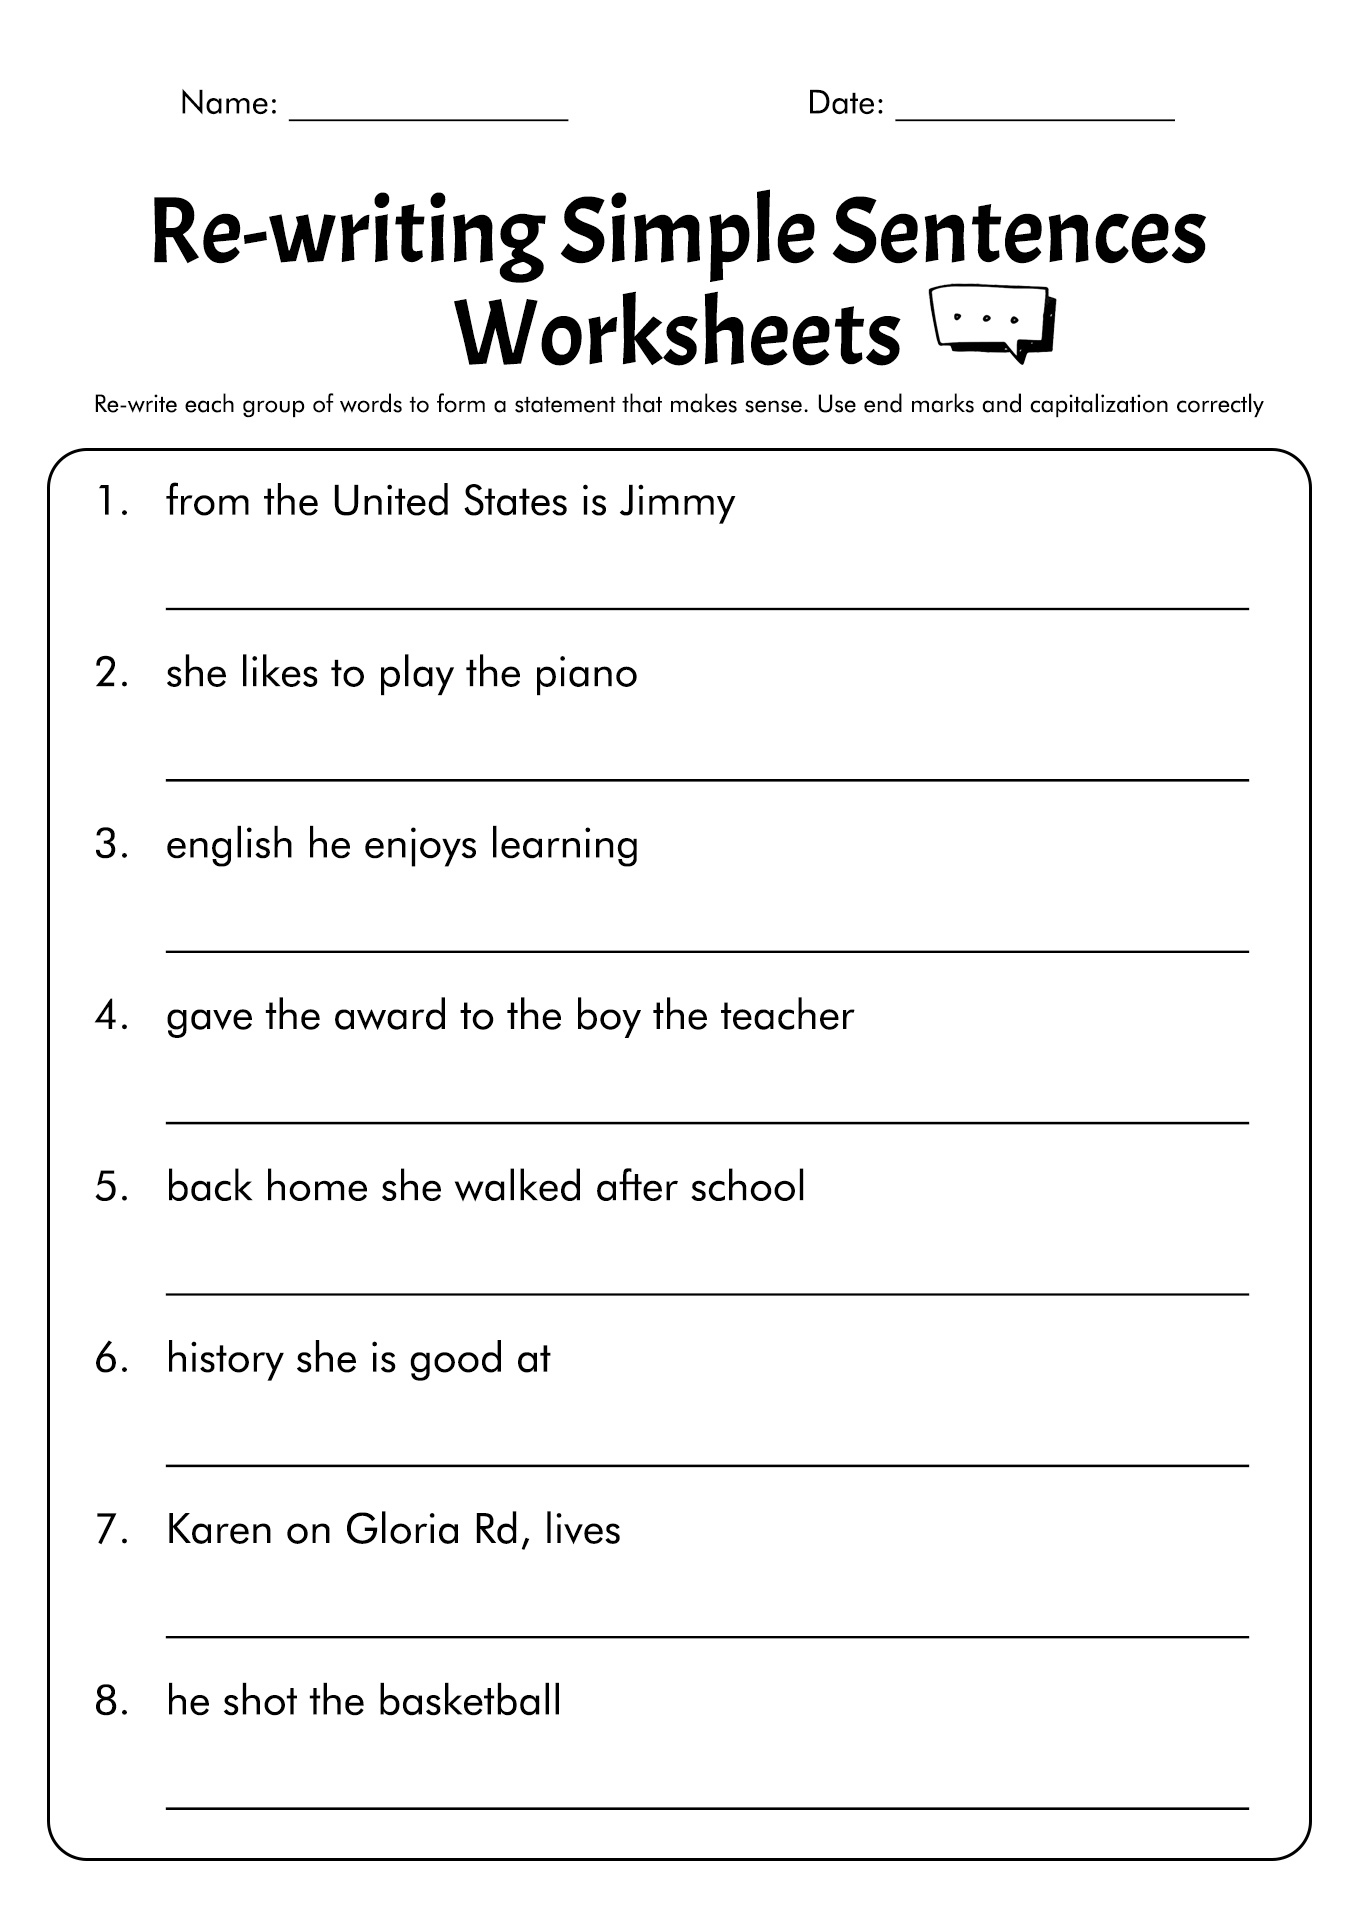 kindergarten-simple-sentences-worksheet-kindergarten